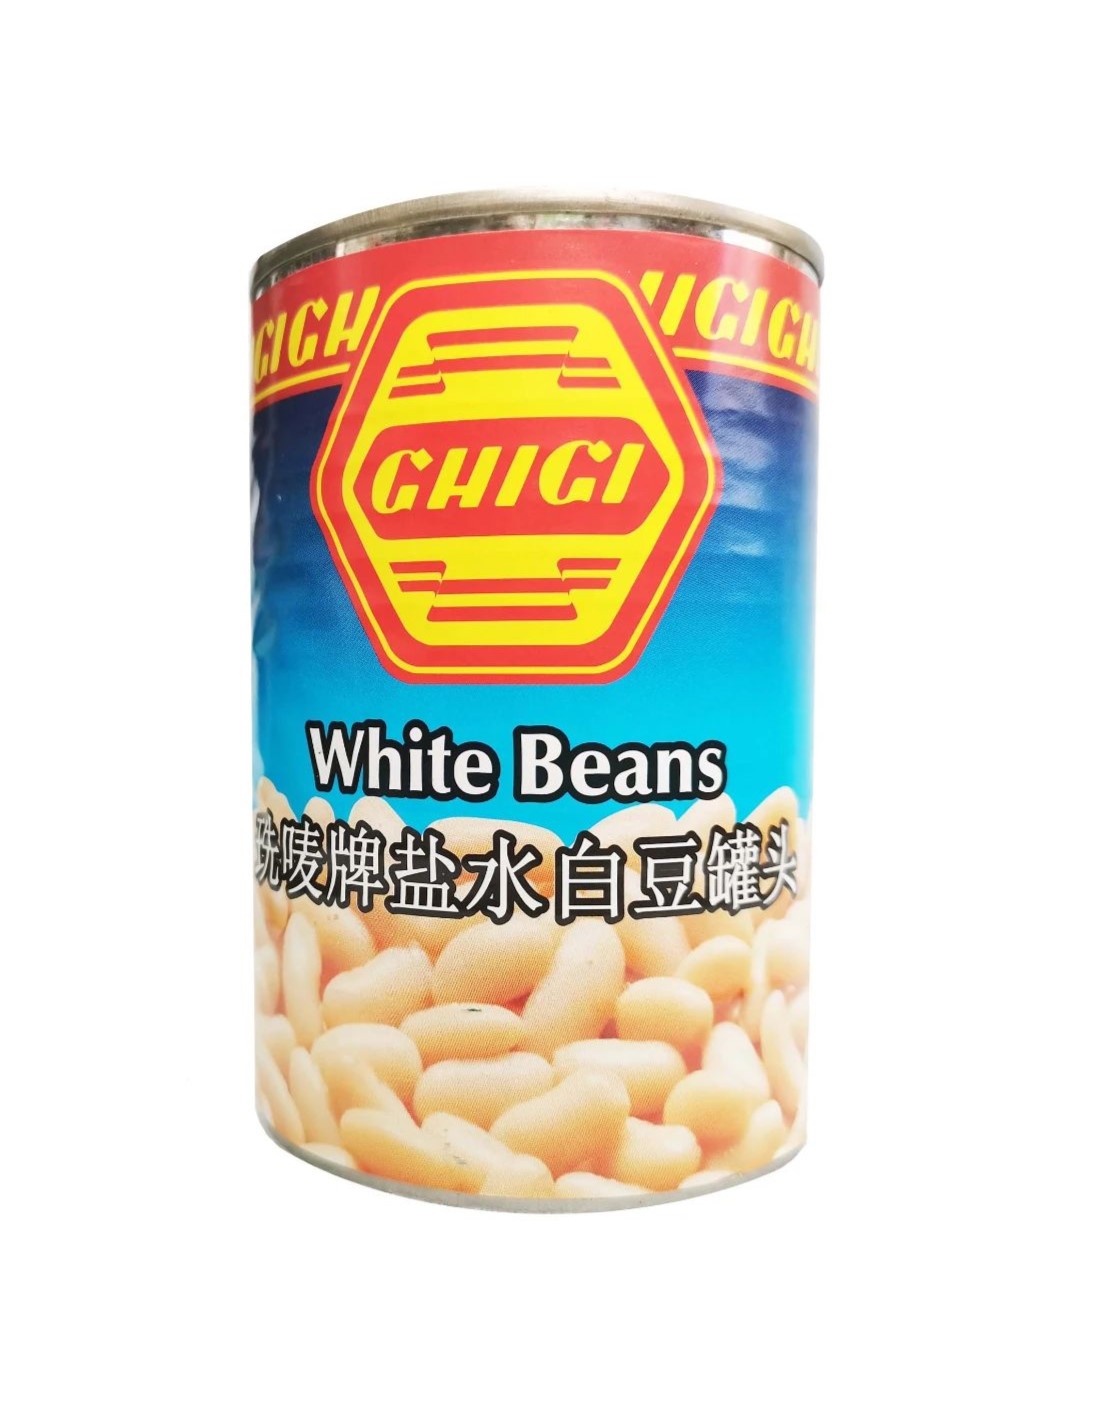 GHIGI White Beans 